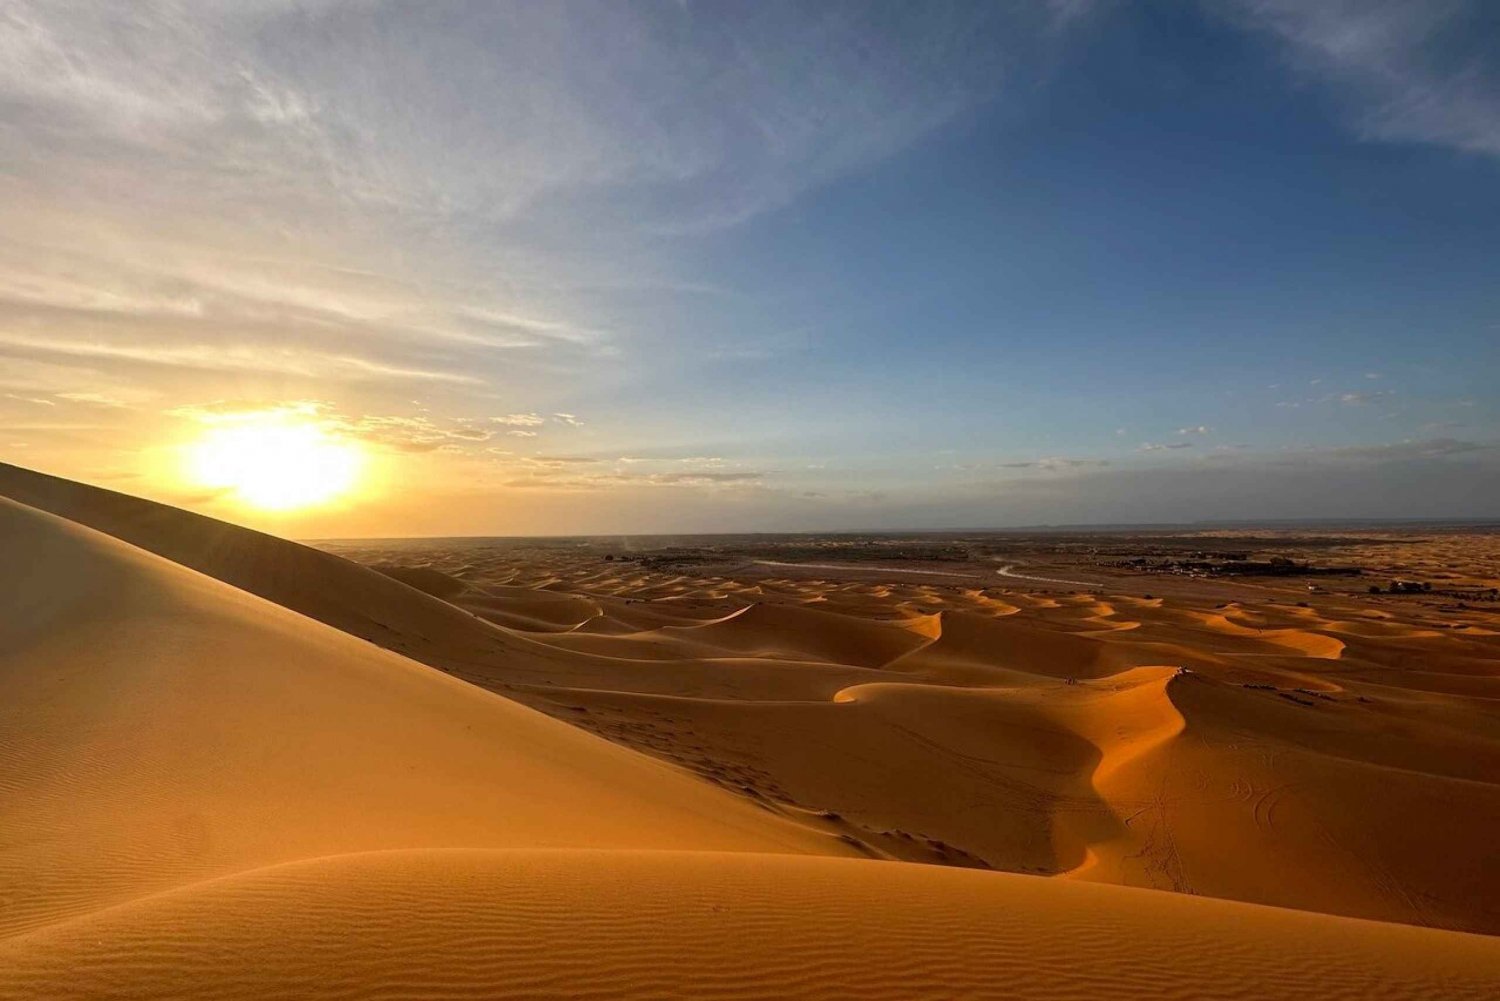 De Fes: Excursão de luxo de 3 dias pelo deserto até Marrakech via Merzouga